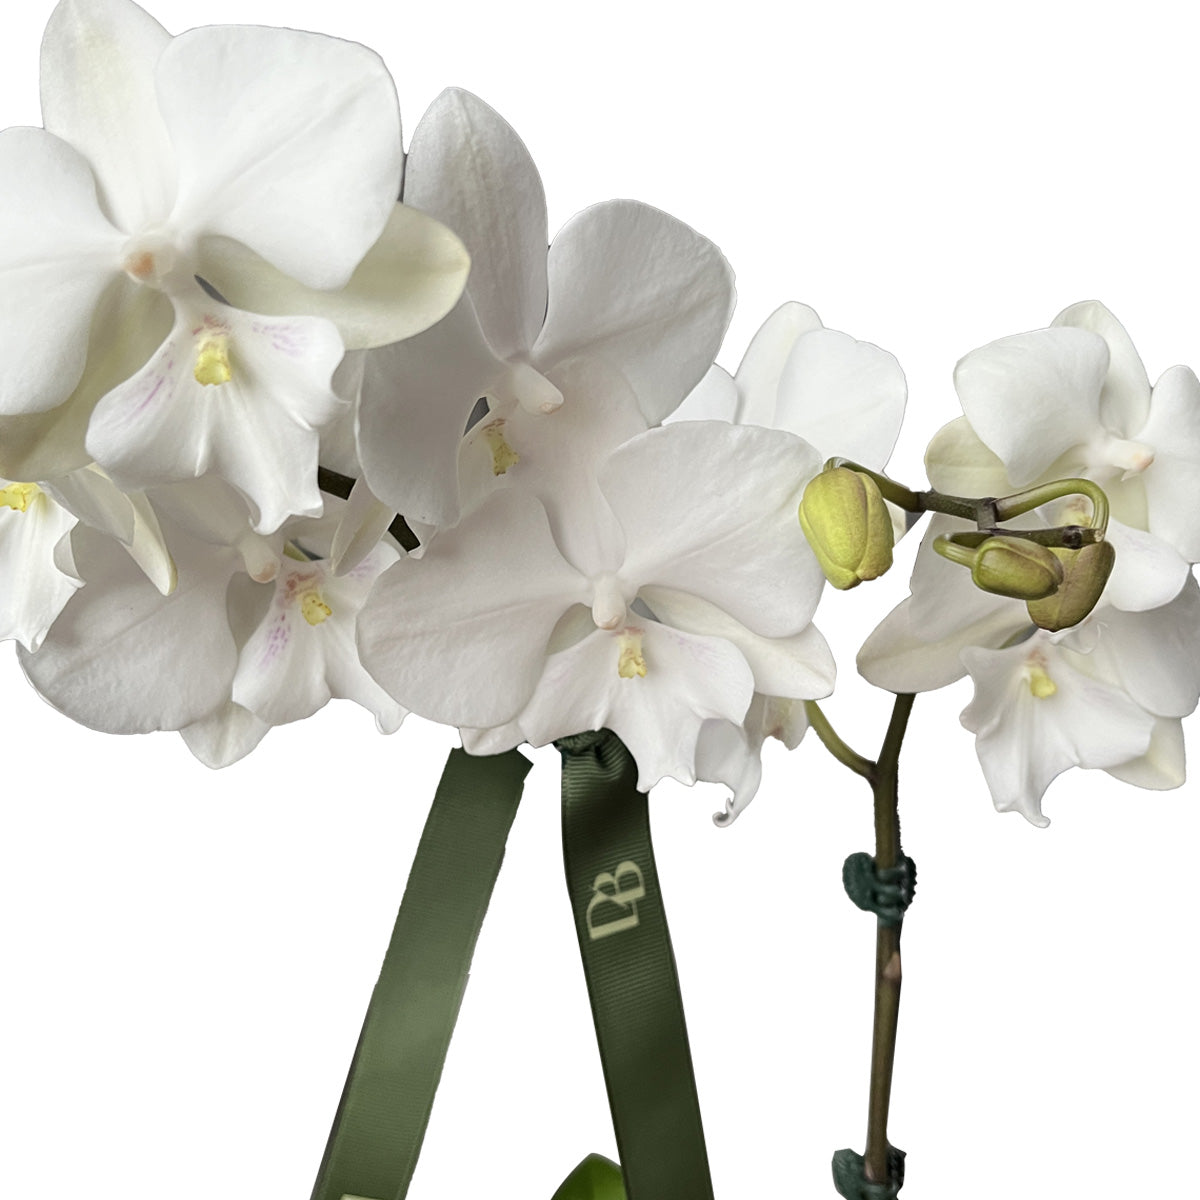 Palawan Orchid Vase Arrangement